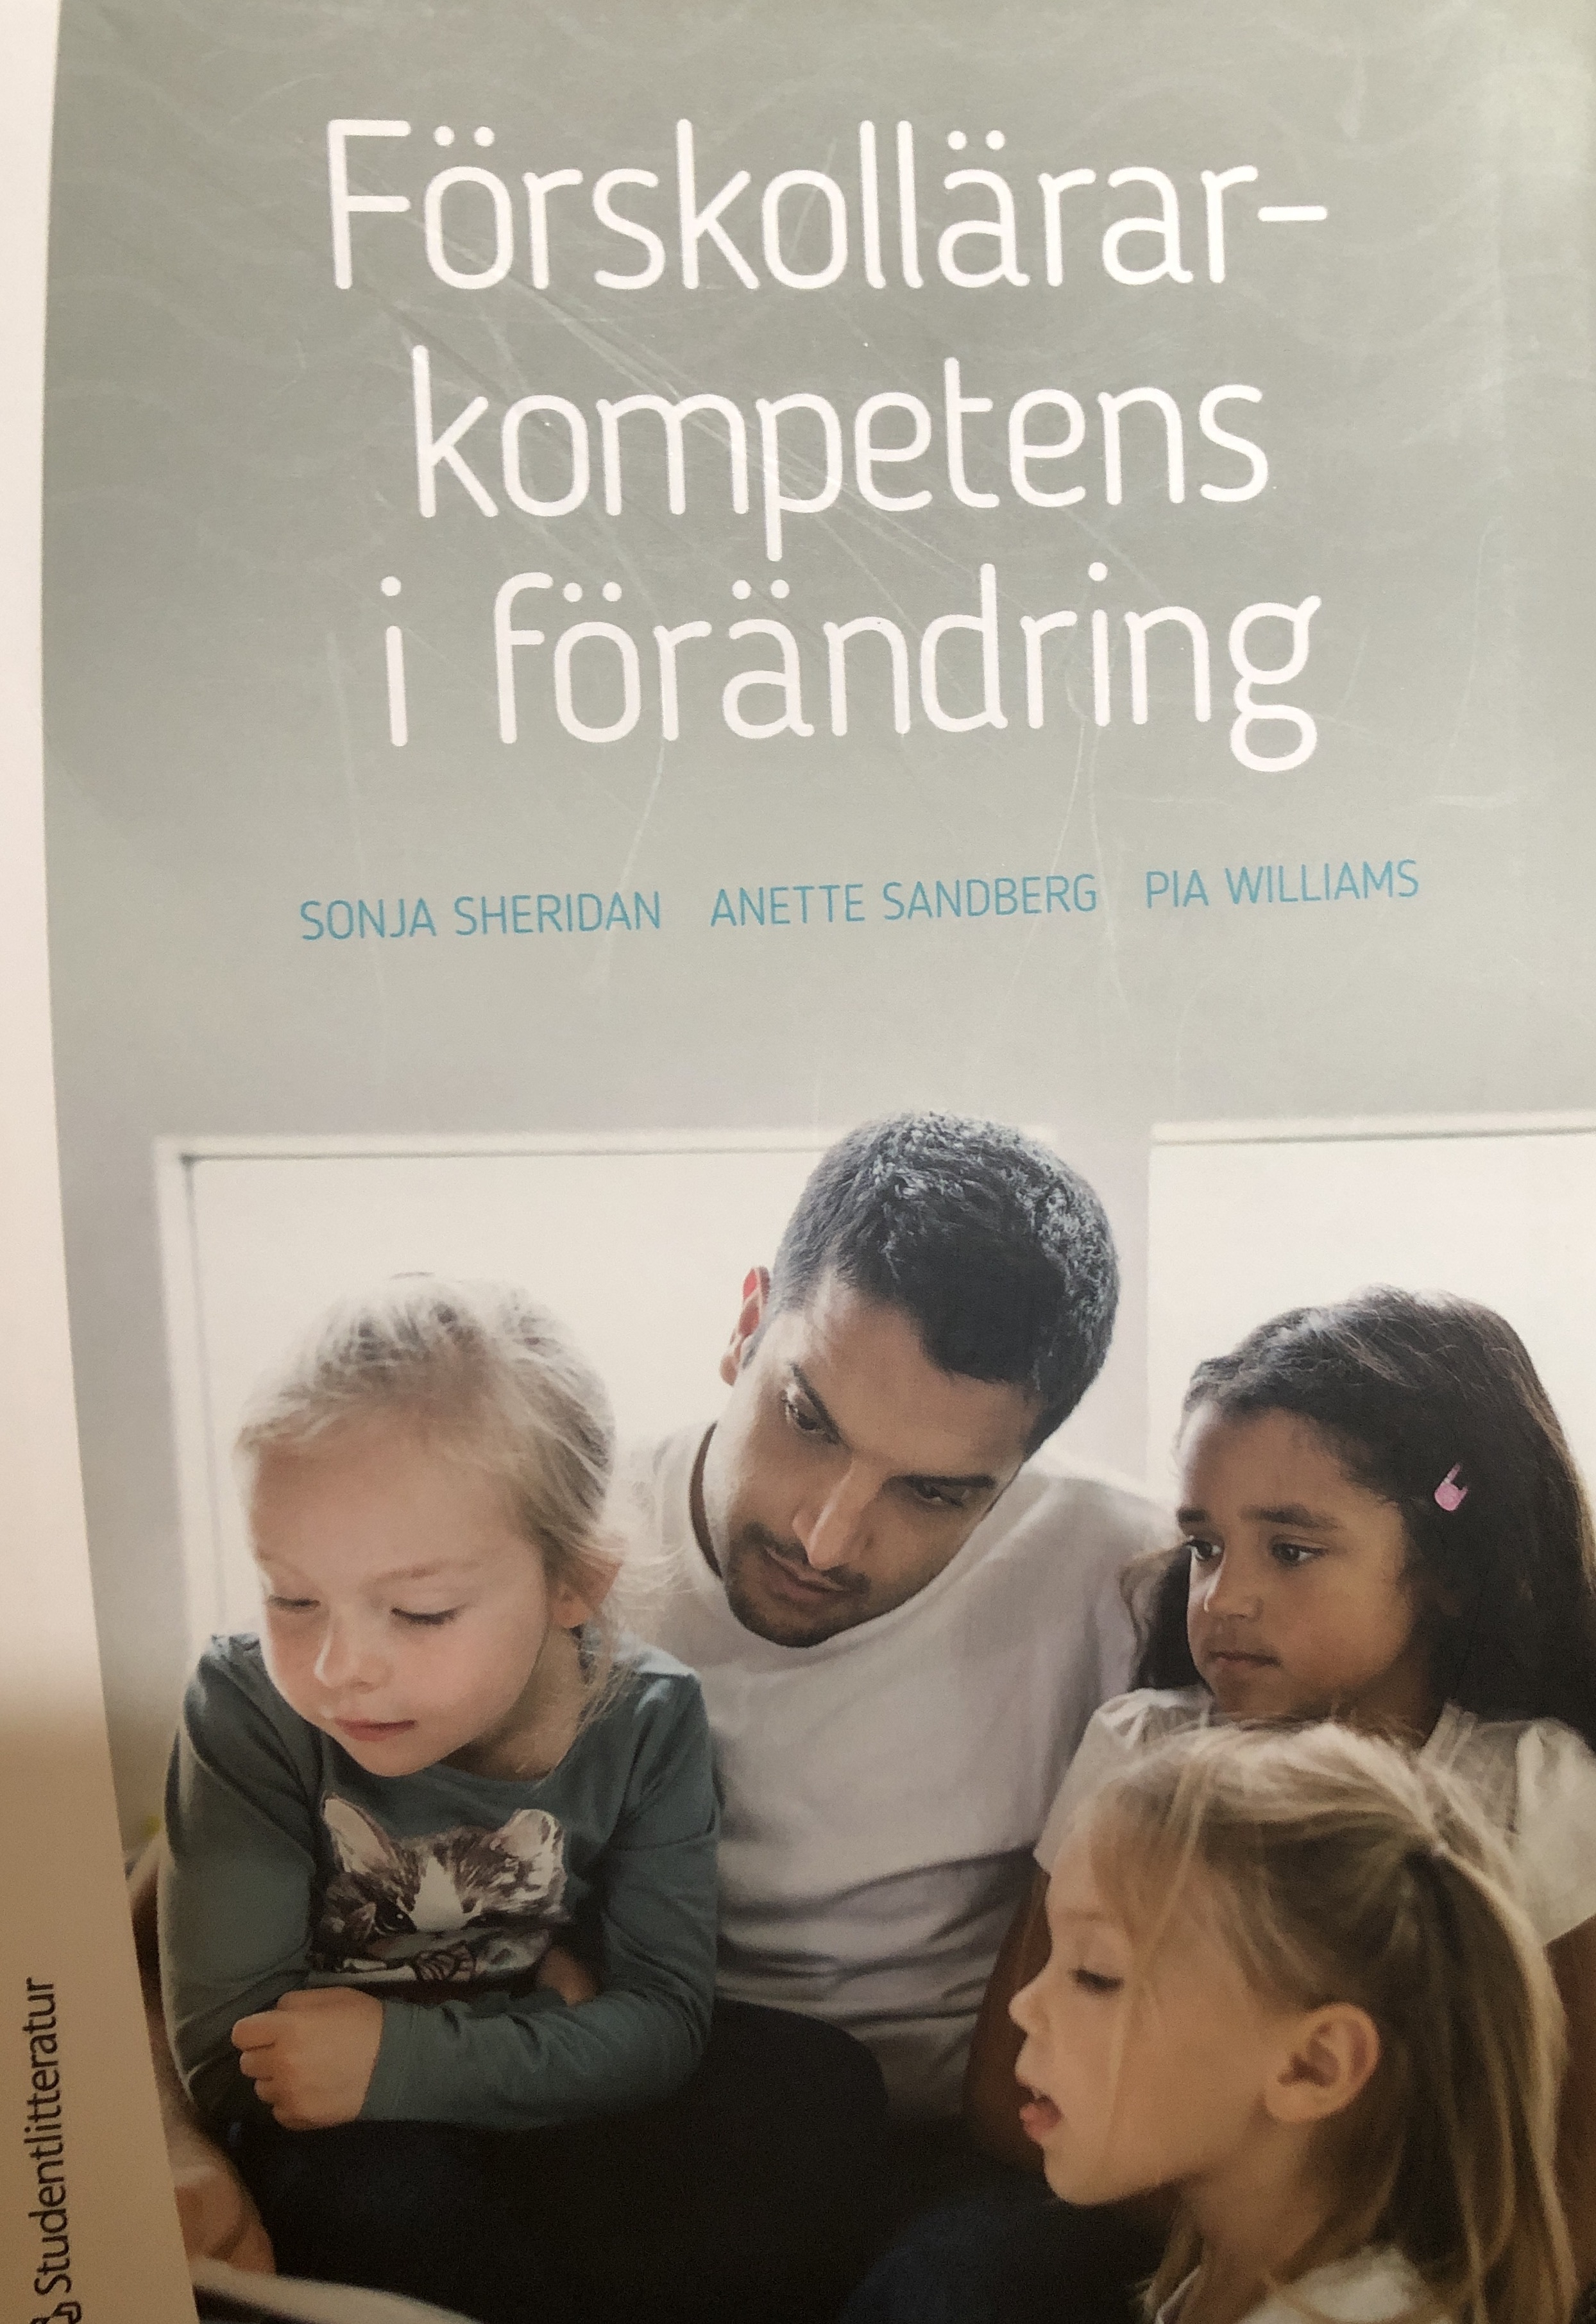 Förskollärarkompetens i förändring; Sonja Sheridan; 2017